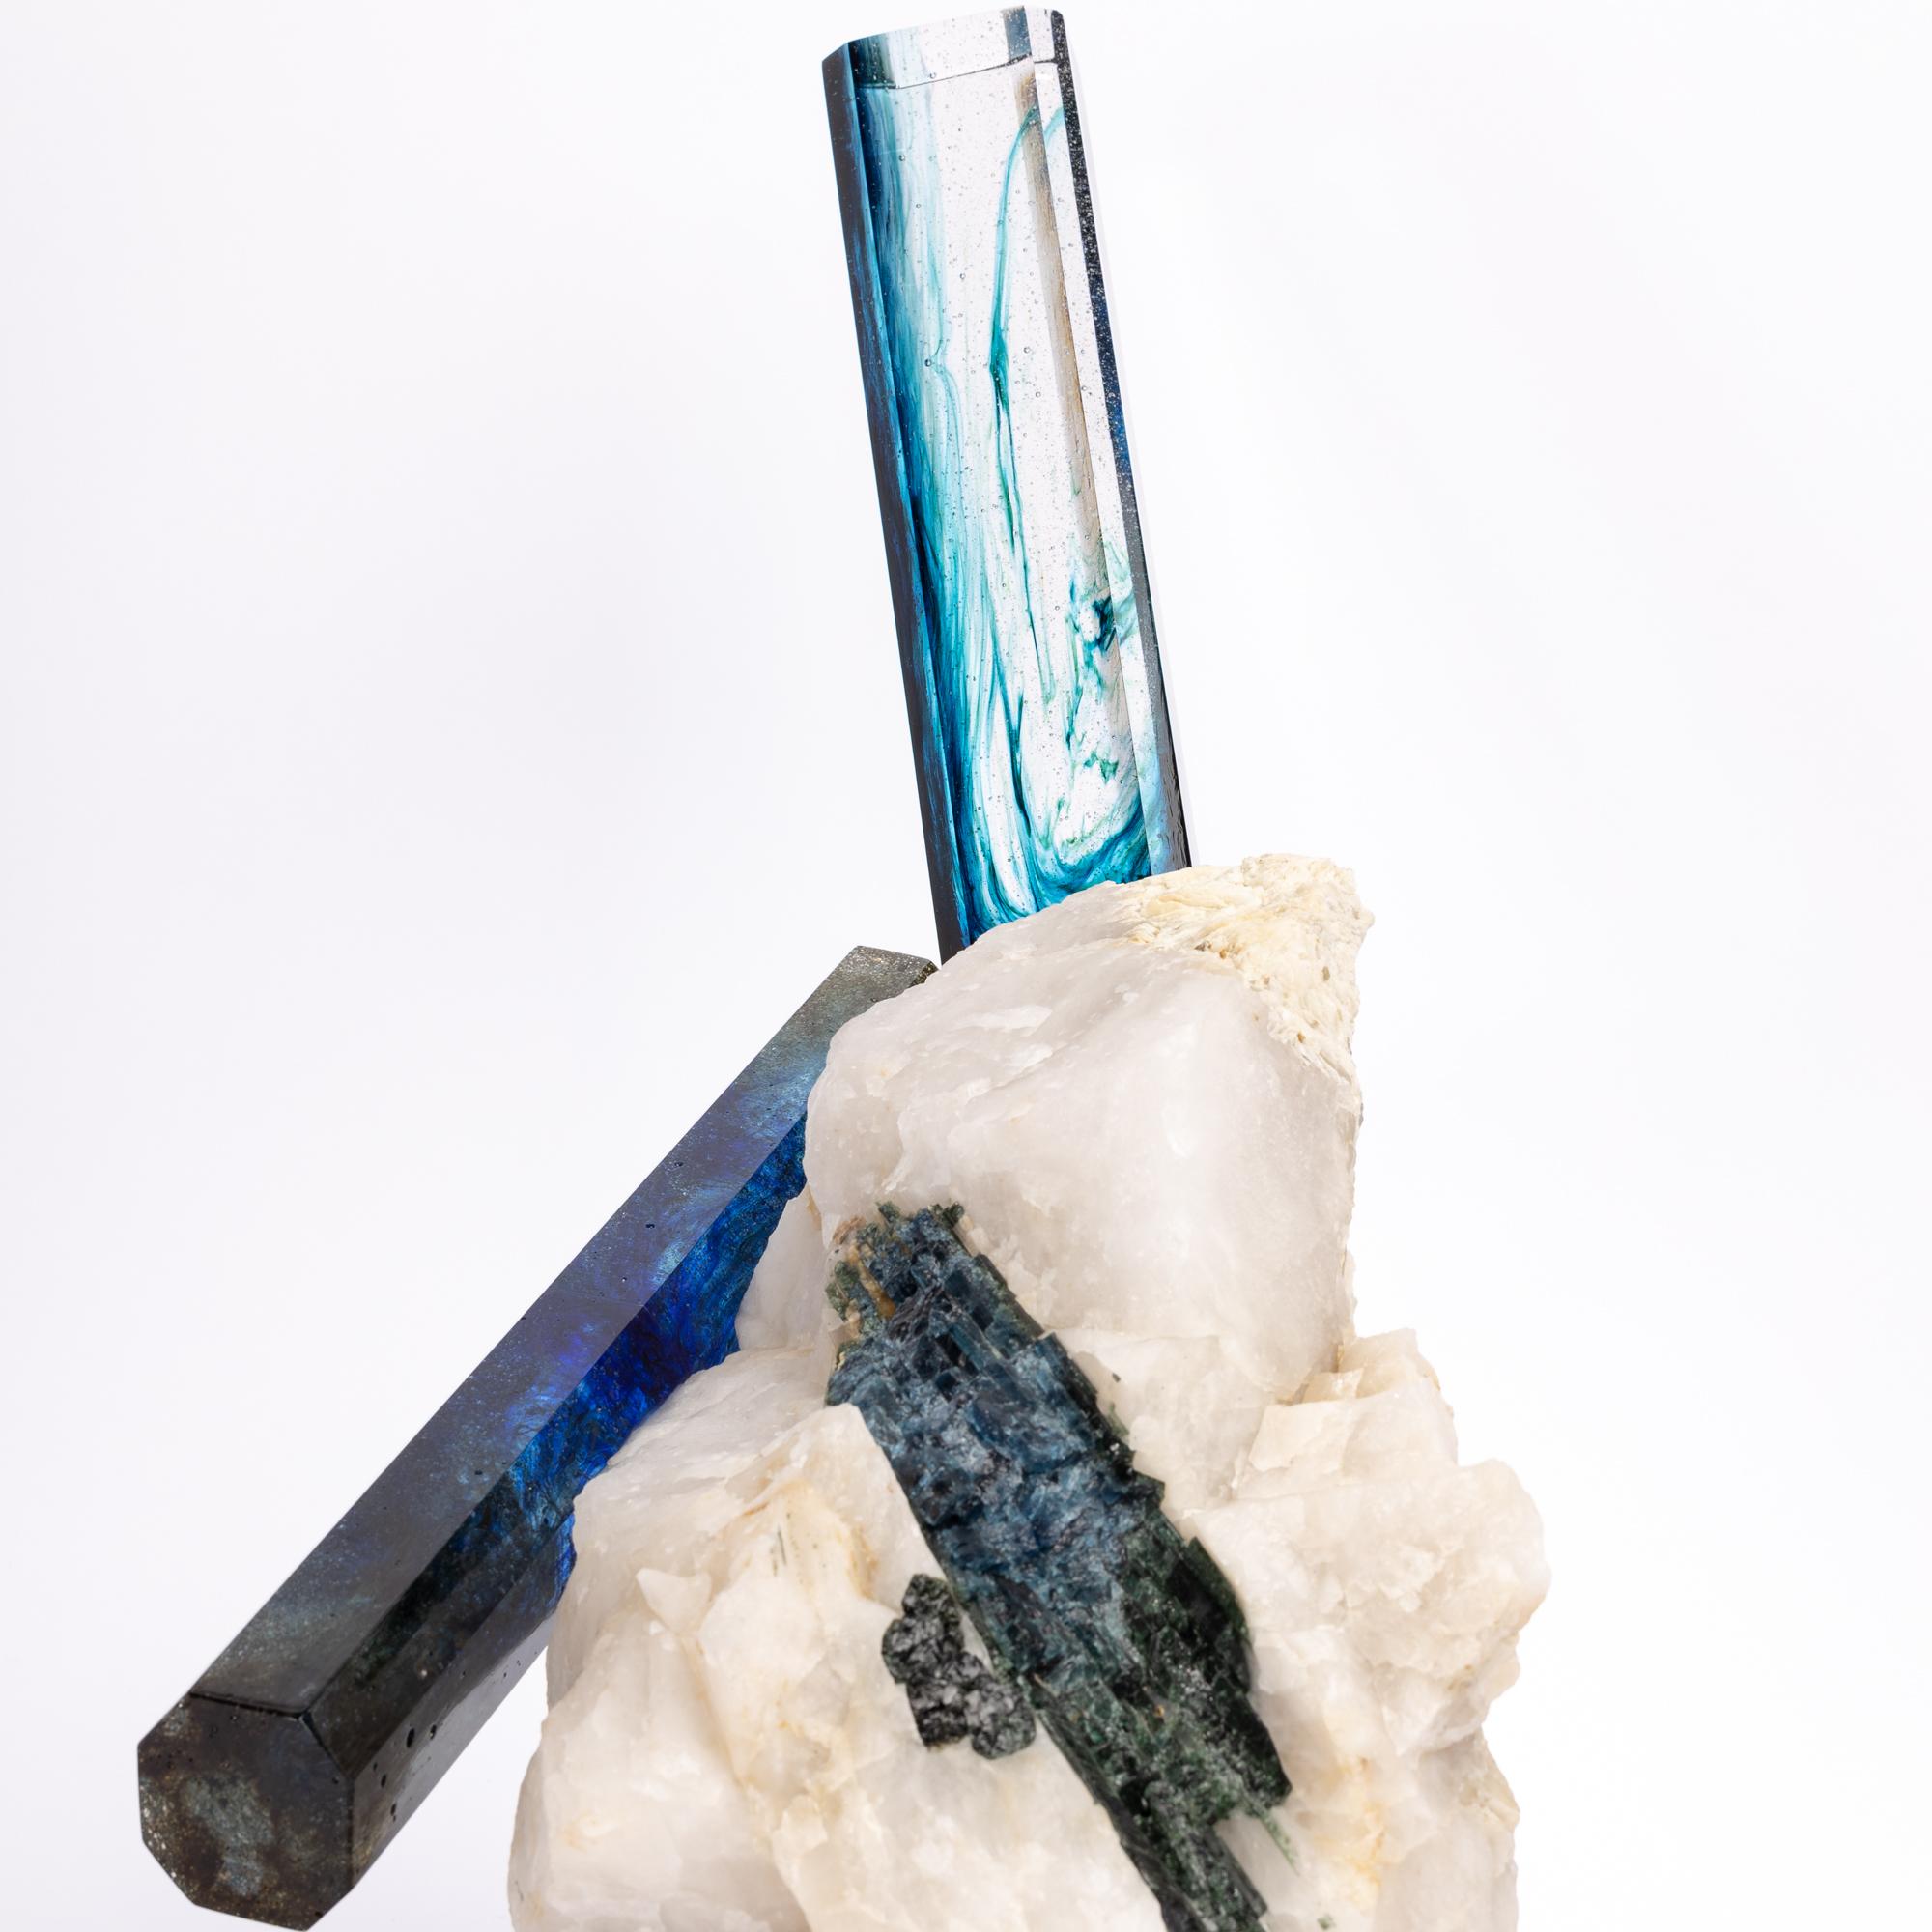 Contemporary Tourmaline, Quartz and Glass Blue Shade Sculpture